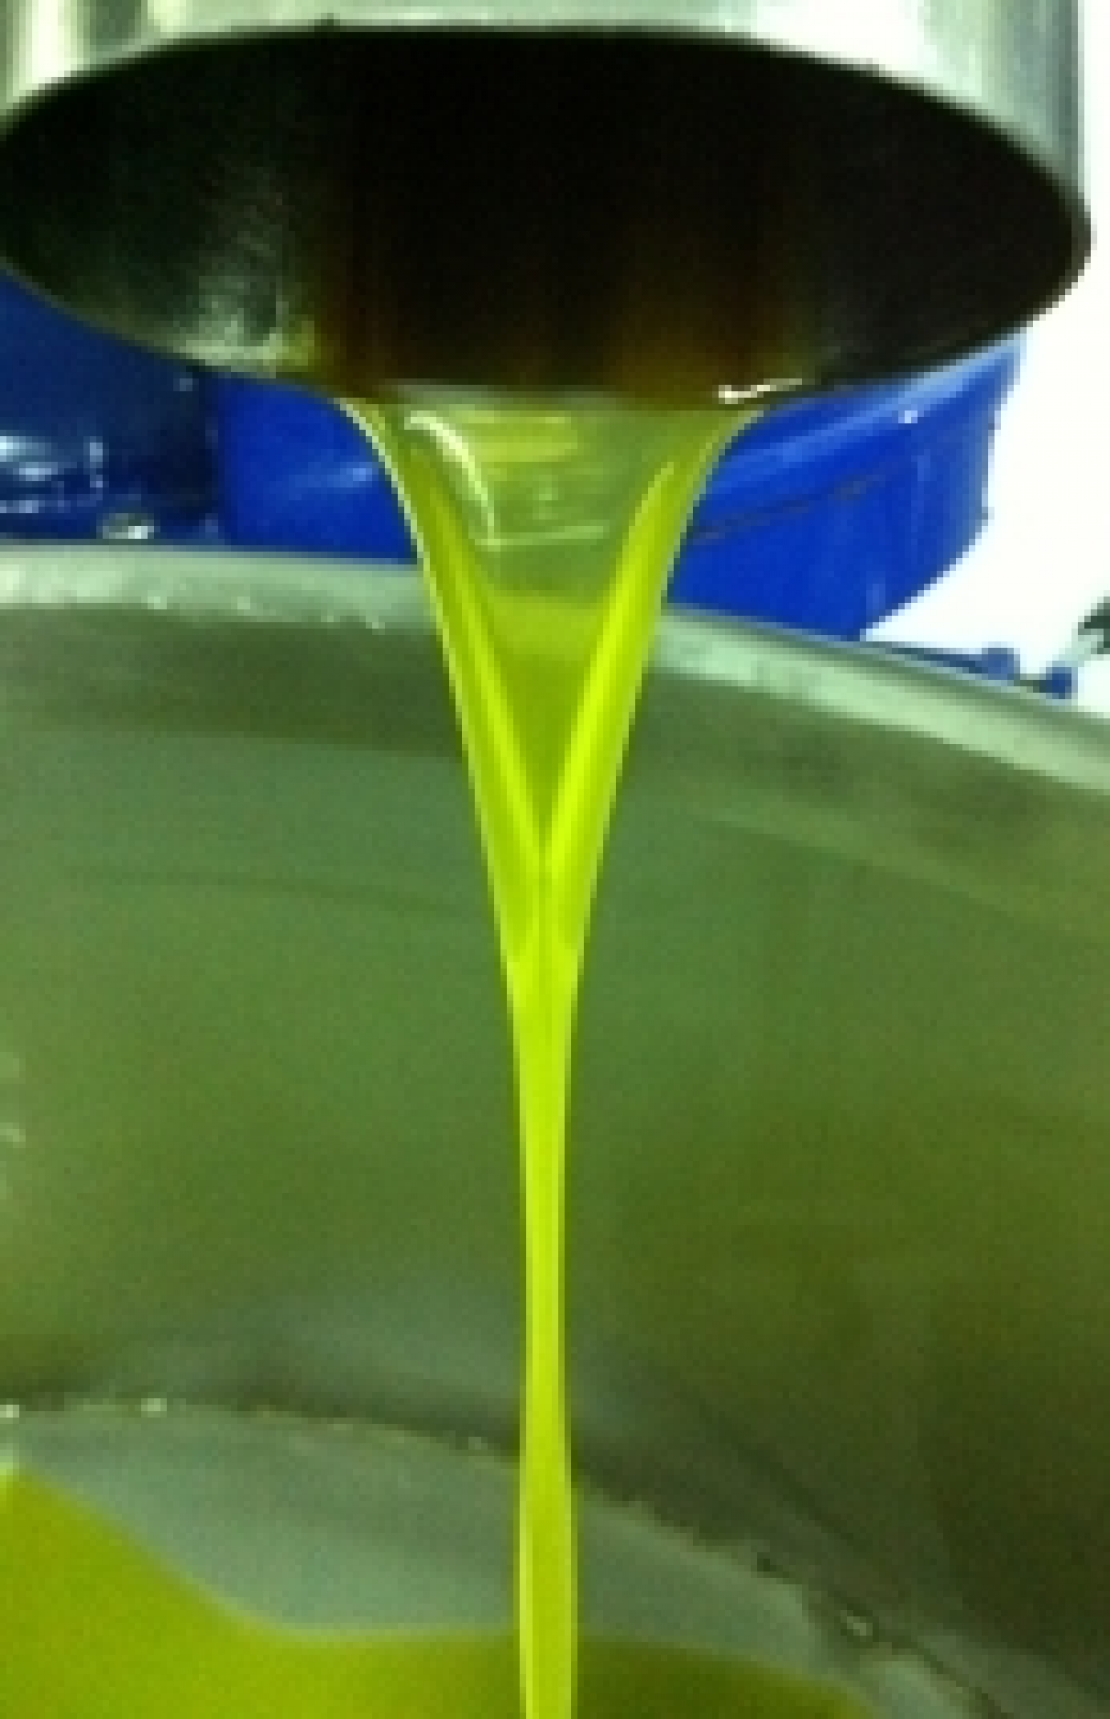 Fermentazione controllata delle olive prima dell'estrazione per dare vita più lunga all'extra vergine